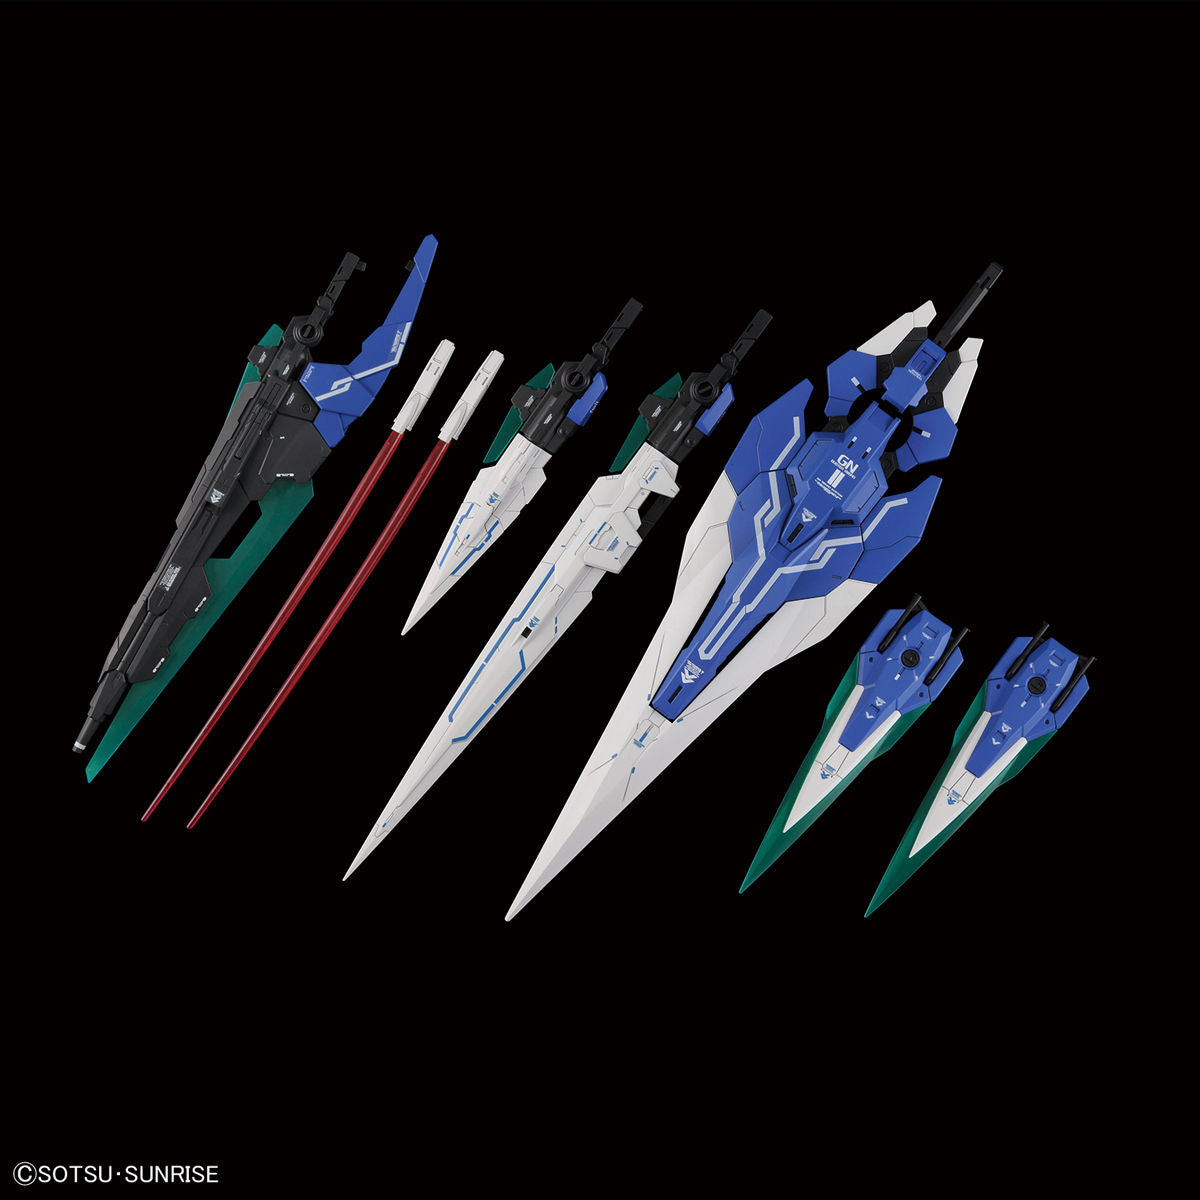 Bandai PG 1/60 Double O Gundam Seven Swords/G